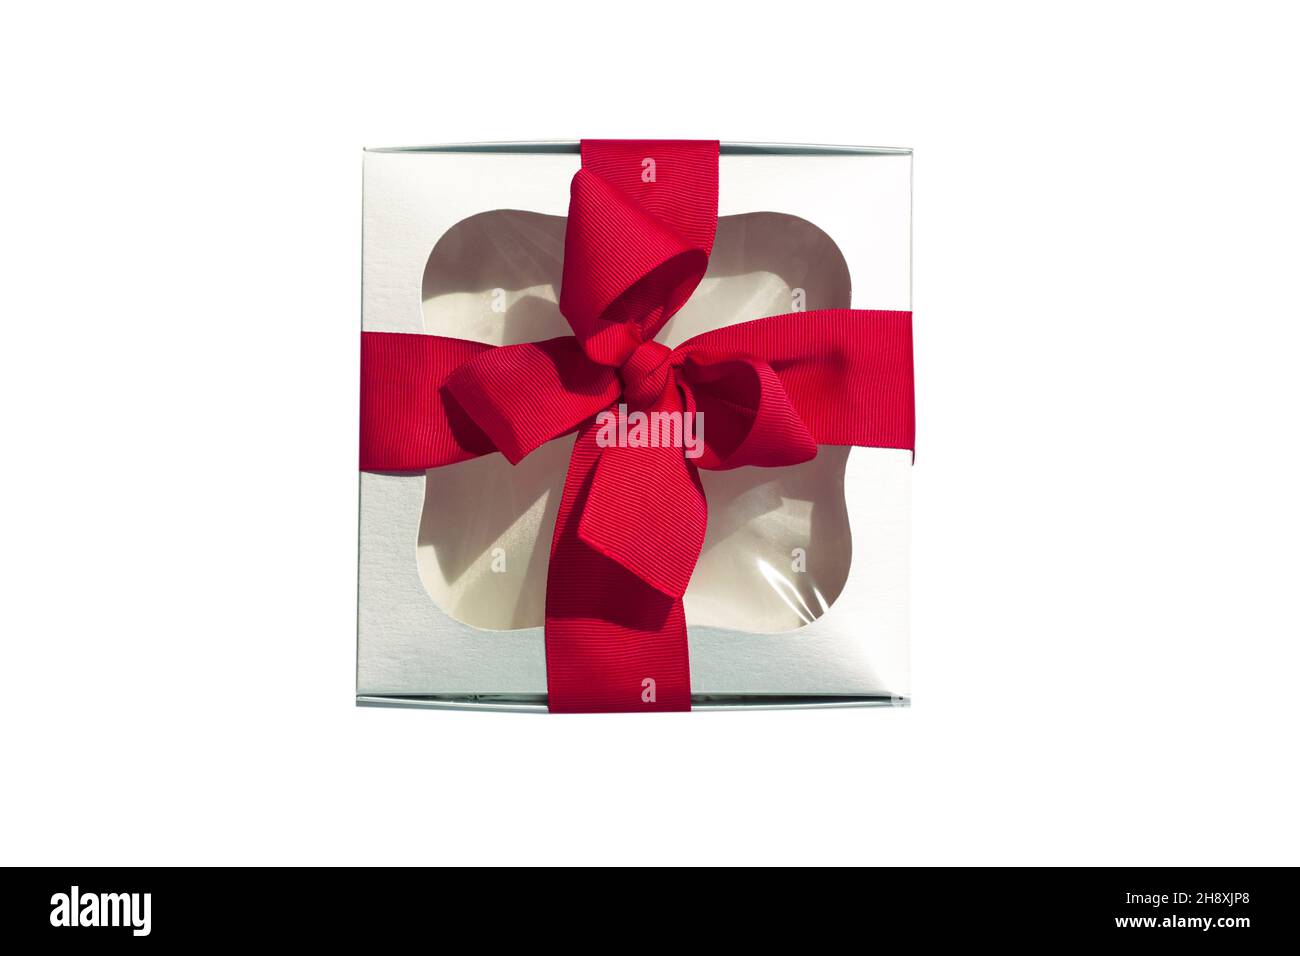 Boîte cadeau argentée avec noeud en ruban rouge isolé sur fond blanc.Emballage moderne en cadeau métallique avec fenêtre.Couleurs contrastées, maquette Banque D'Images